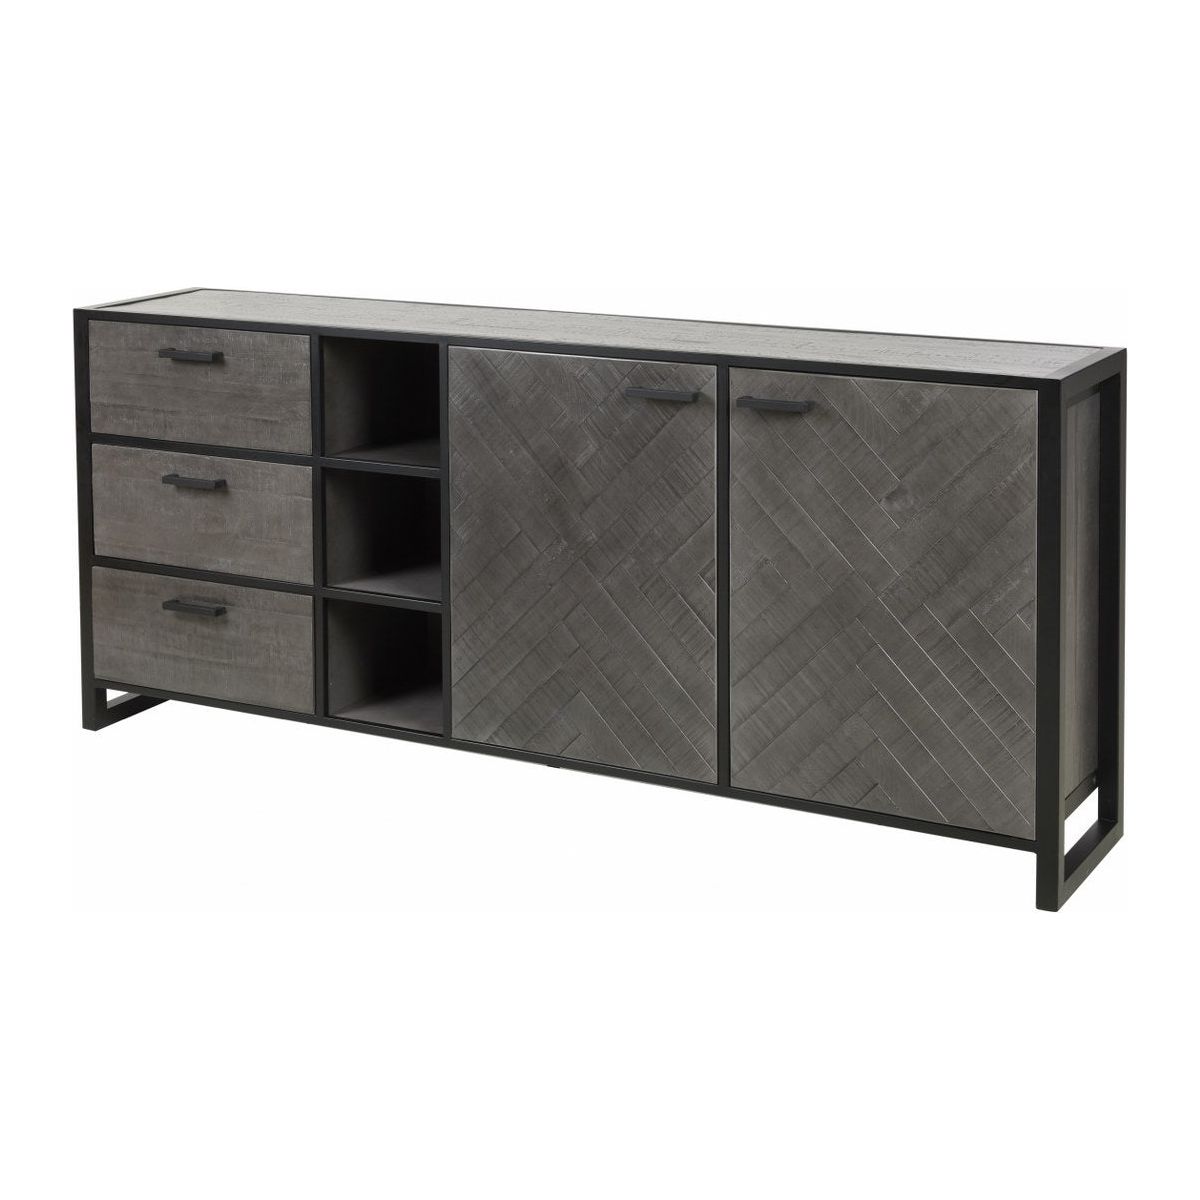 Dresser | Furniture series Micras | Dark gray, black | 220x